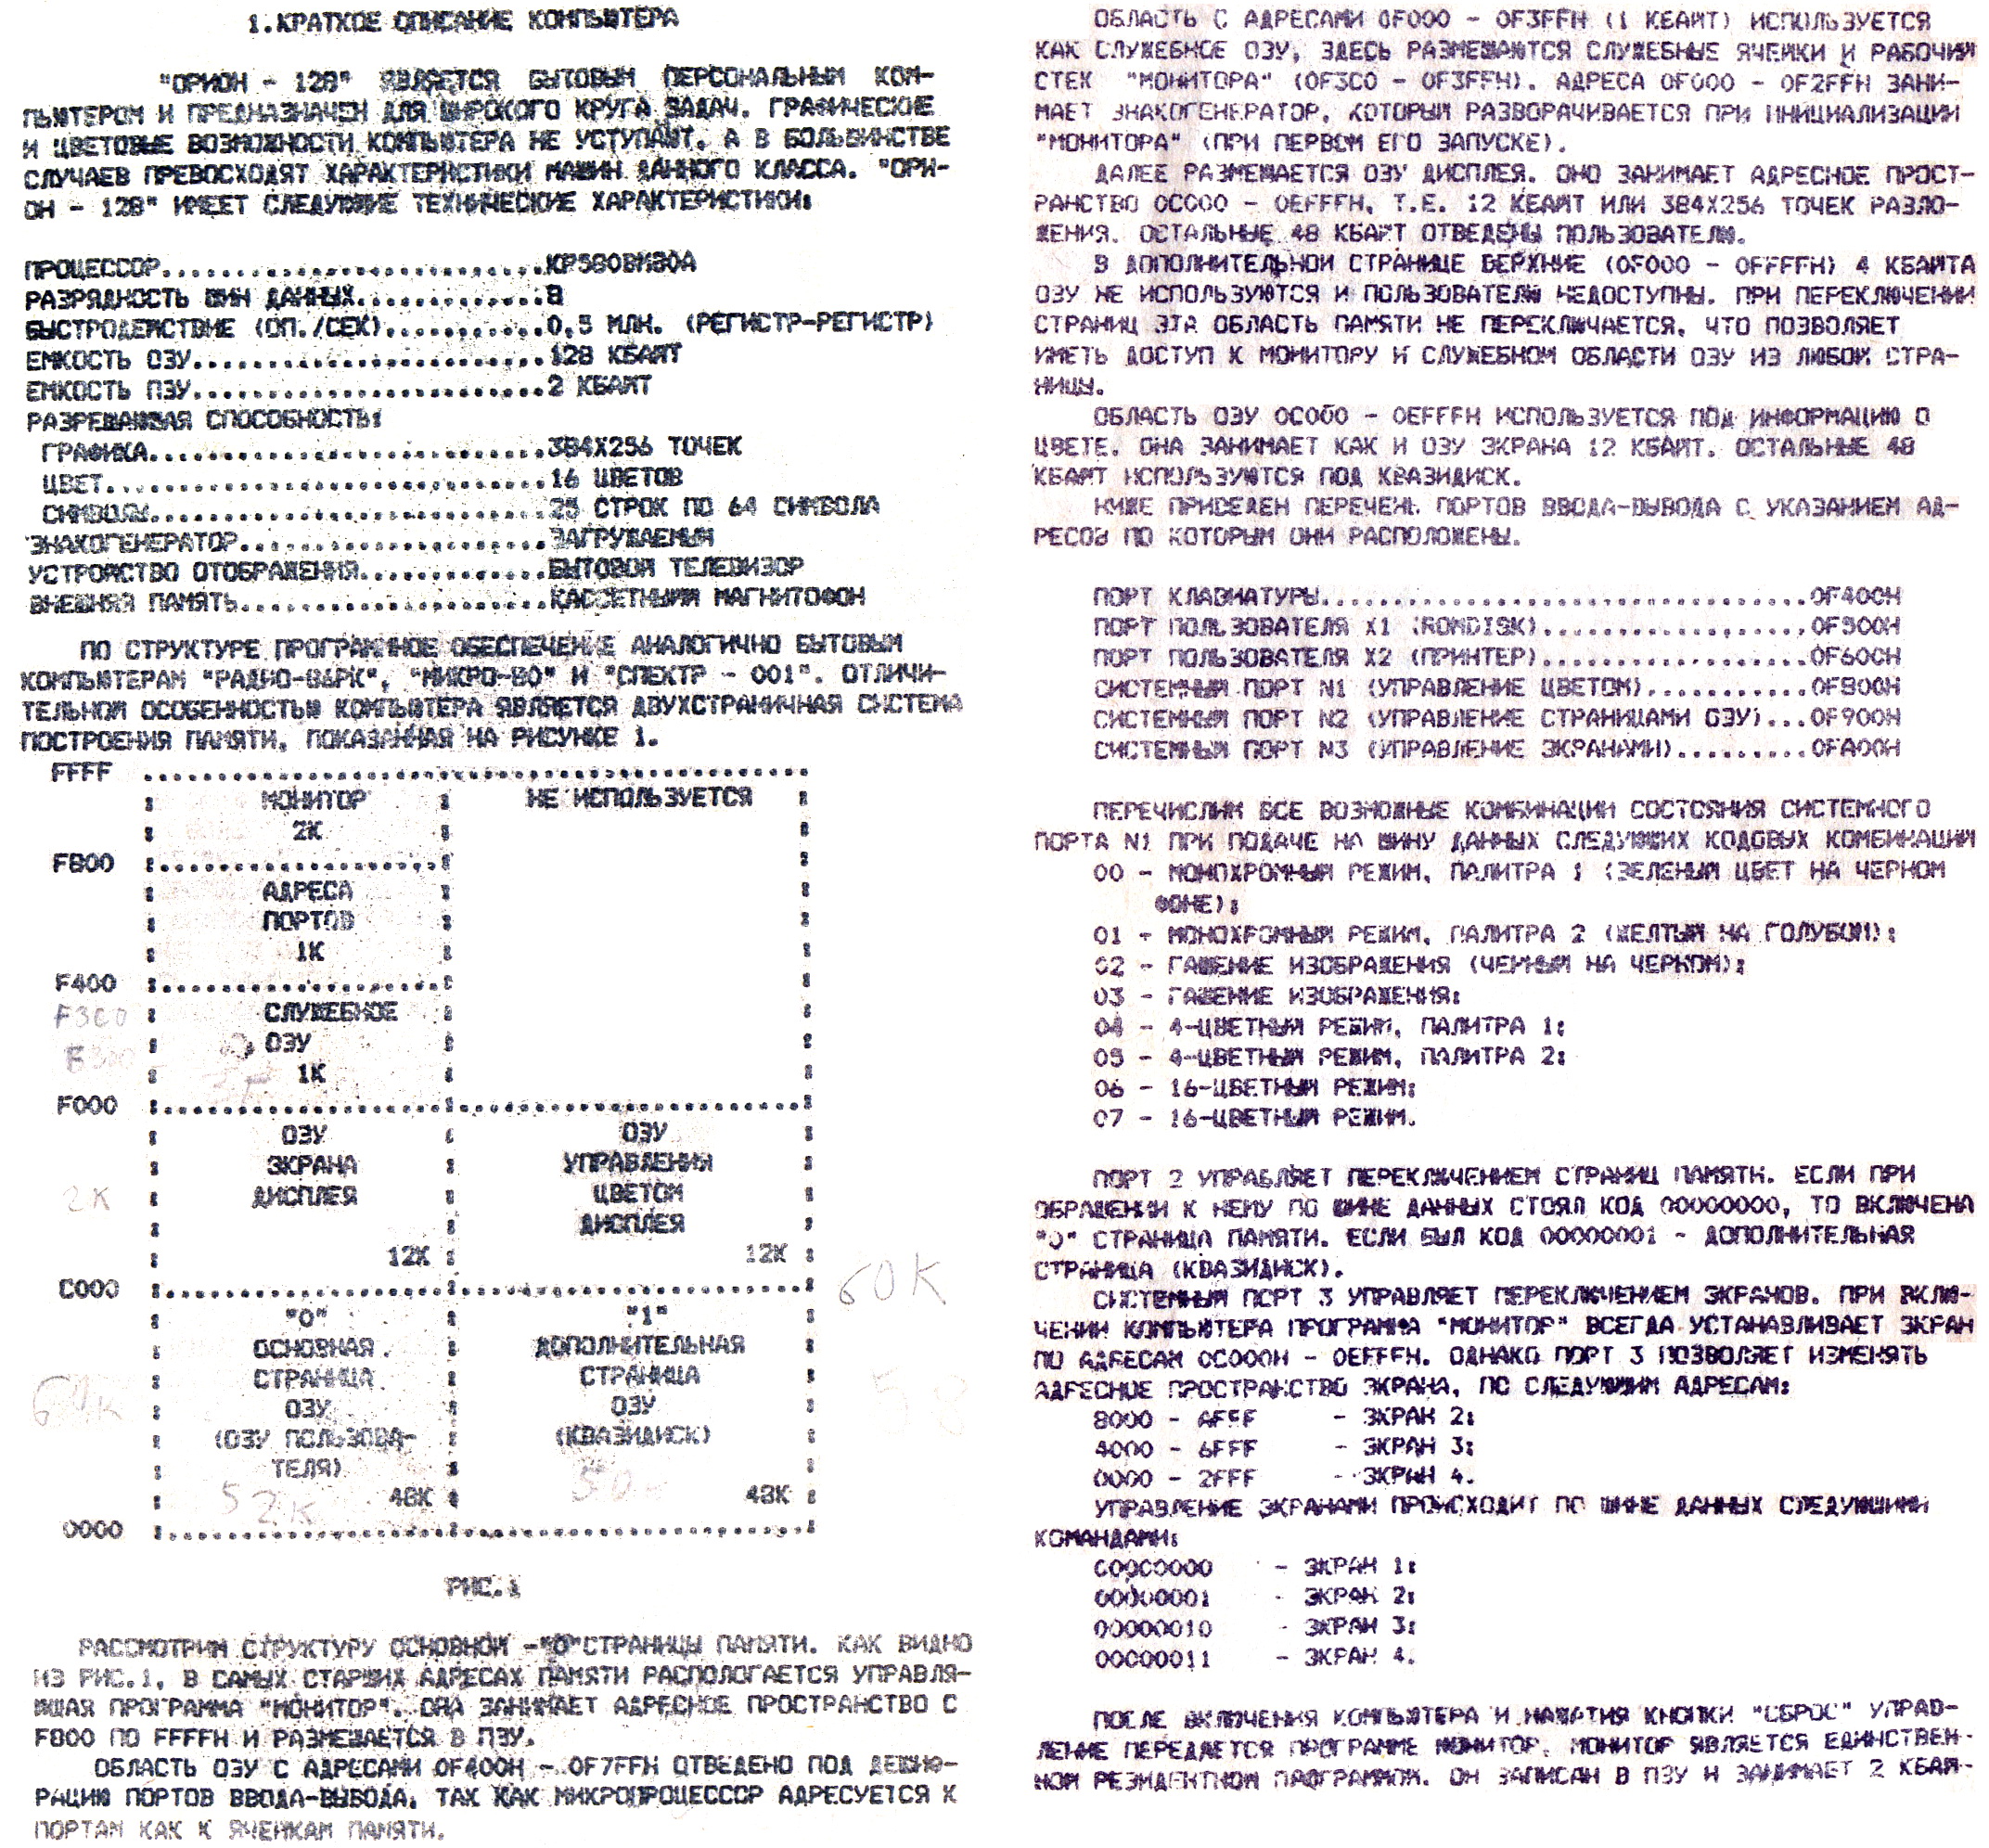 Cтруктура памяти компьютера Орион-128, описание портов ввода-вывода